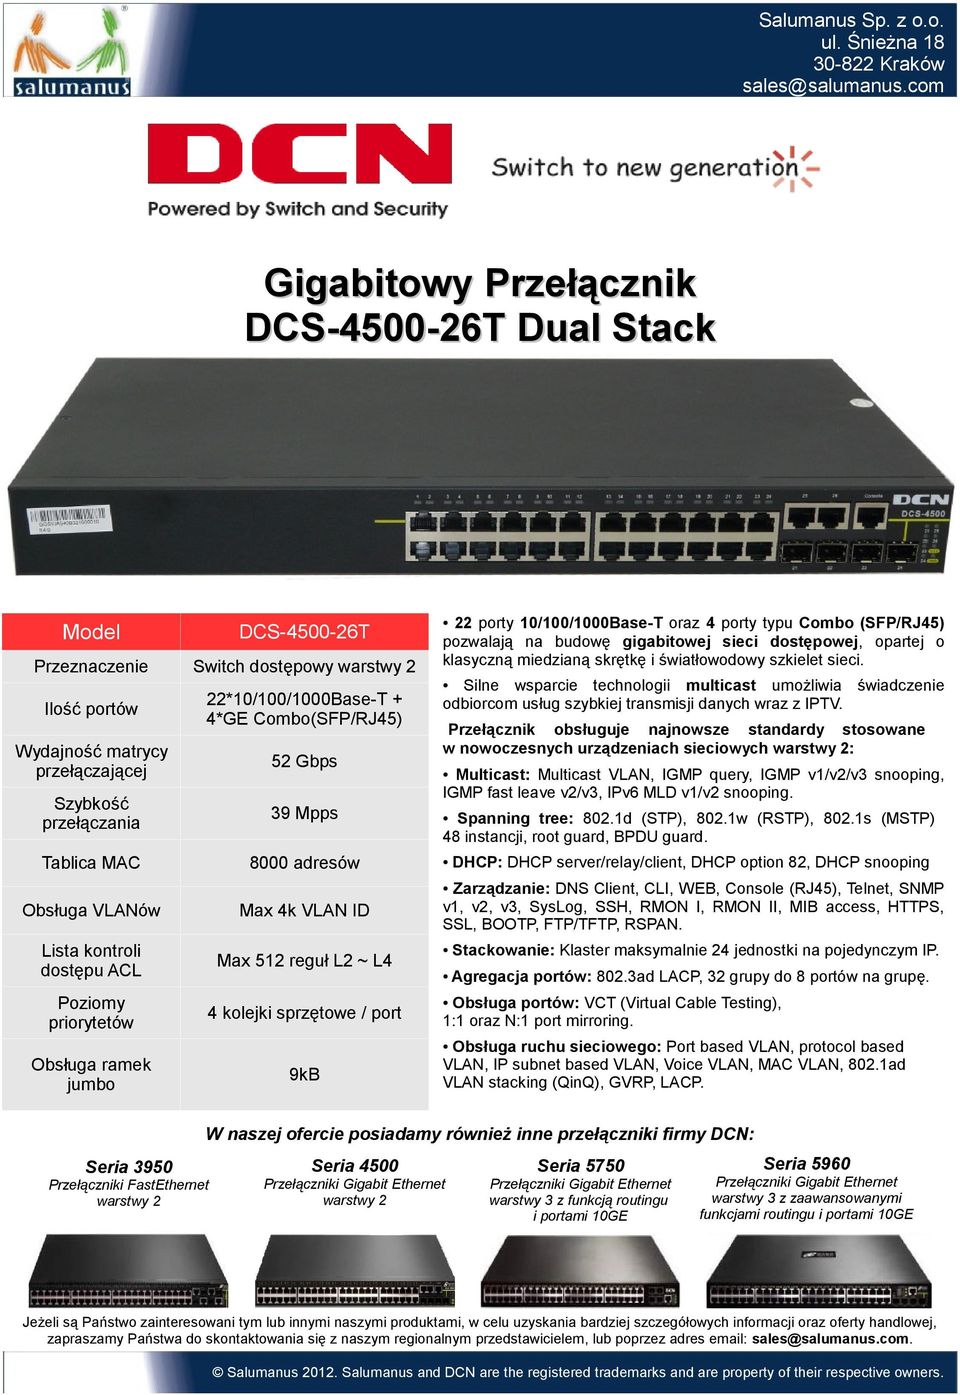 miedzianą skrętkę i światłowodowy szkielet sieci. Przełącznik obsługuje najnowsze standardy stosowane w nowoczesnych urządzeniach sieciowych : Spanning tree: 802.1d (STP), 802.1w (RSTP), 802.